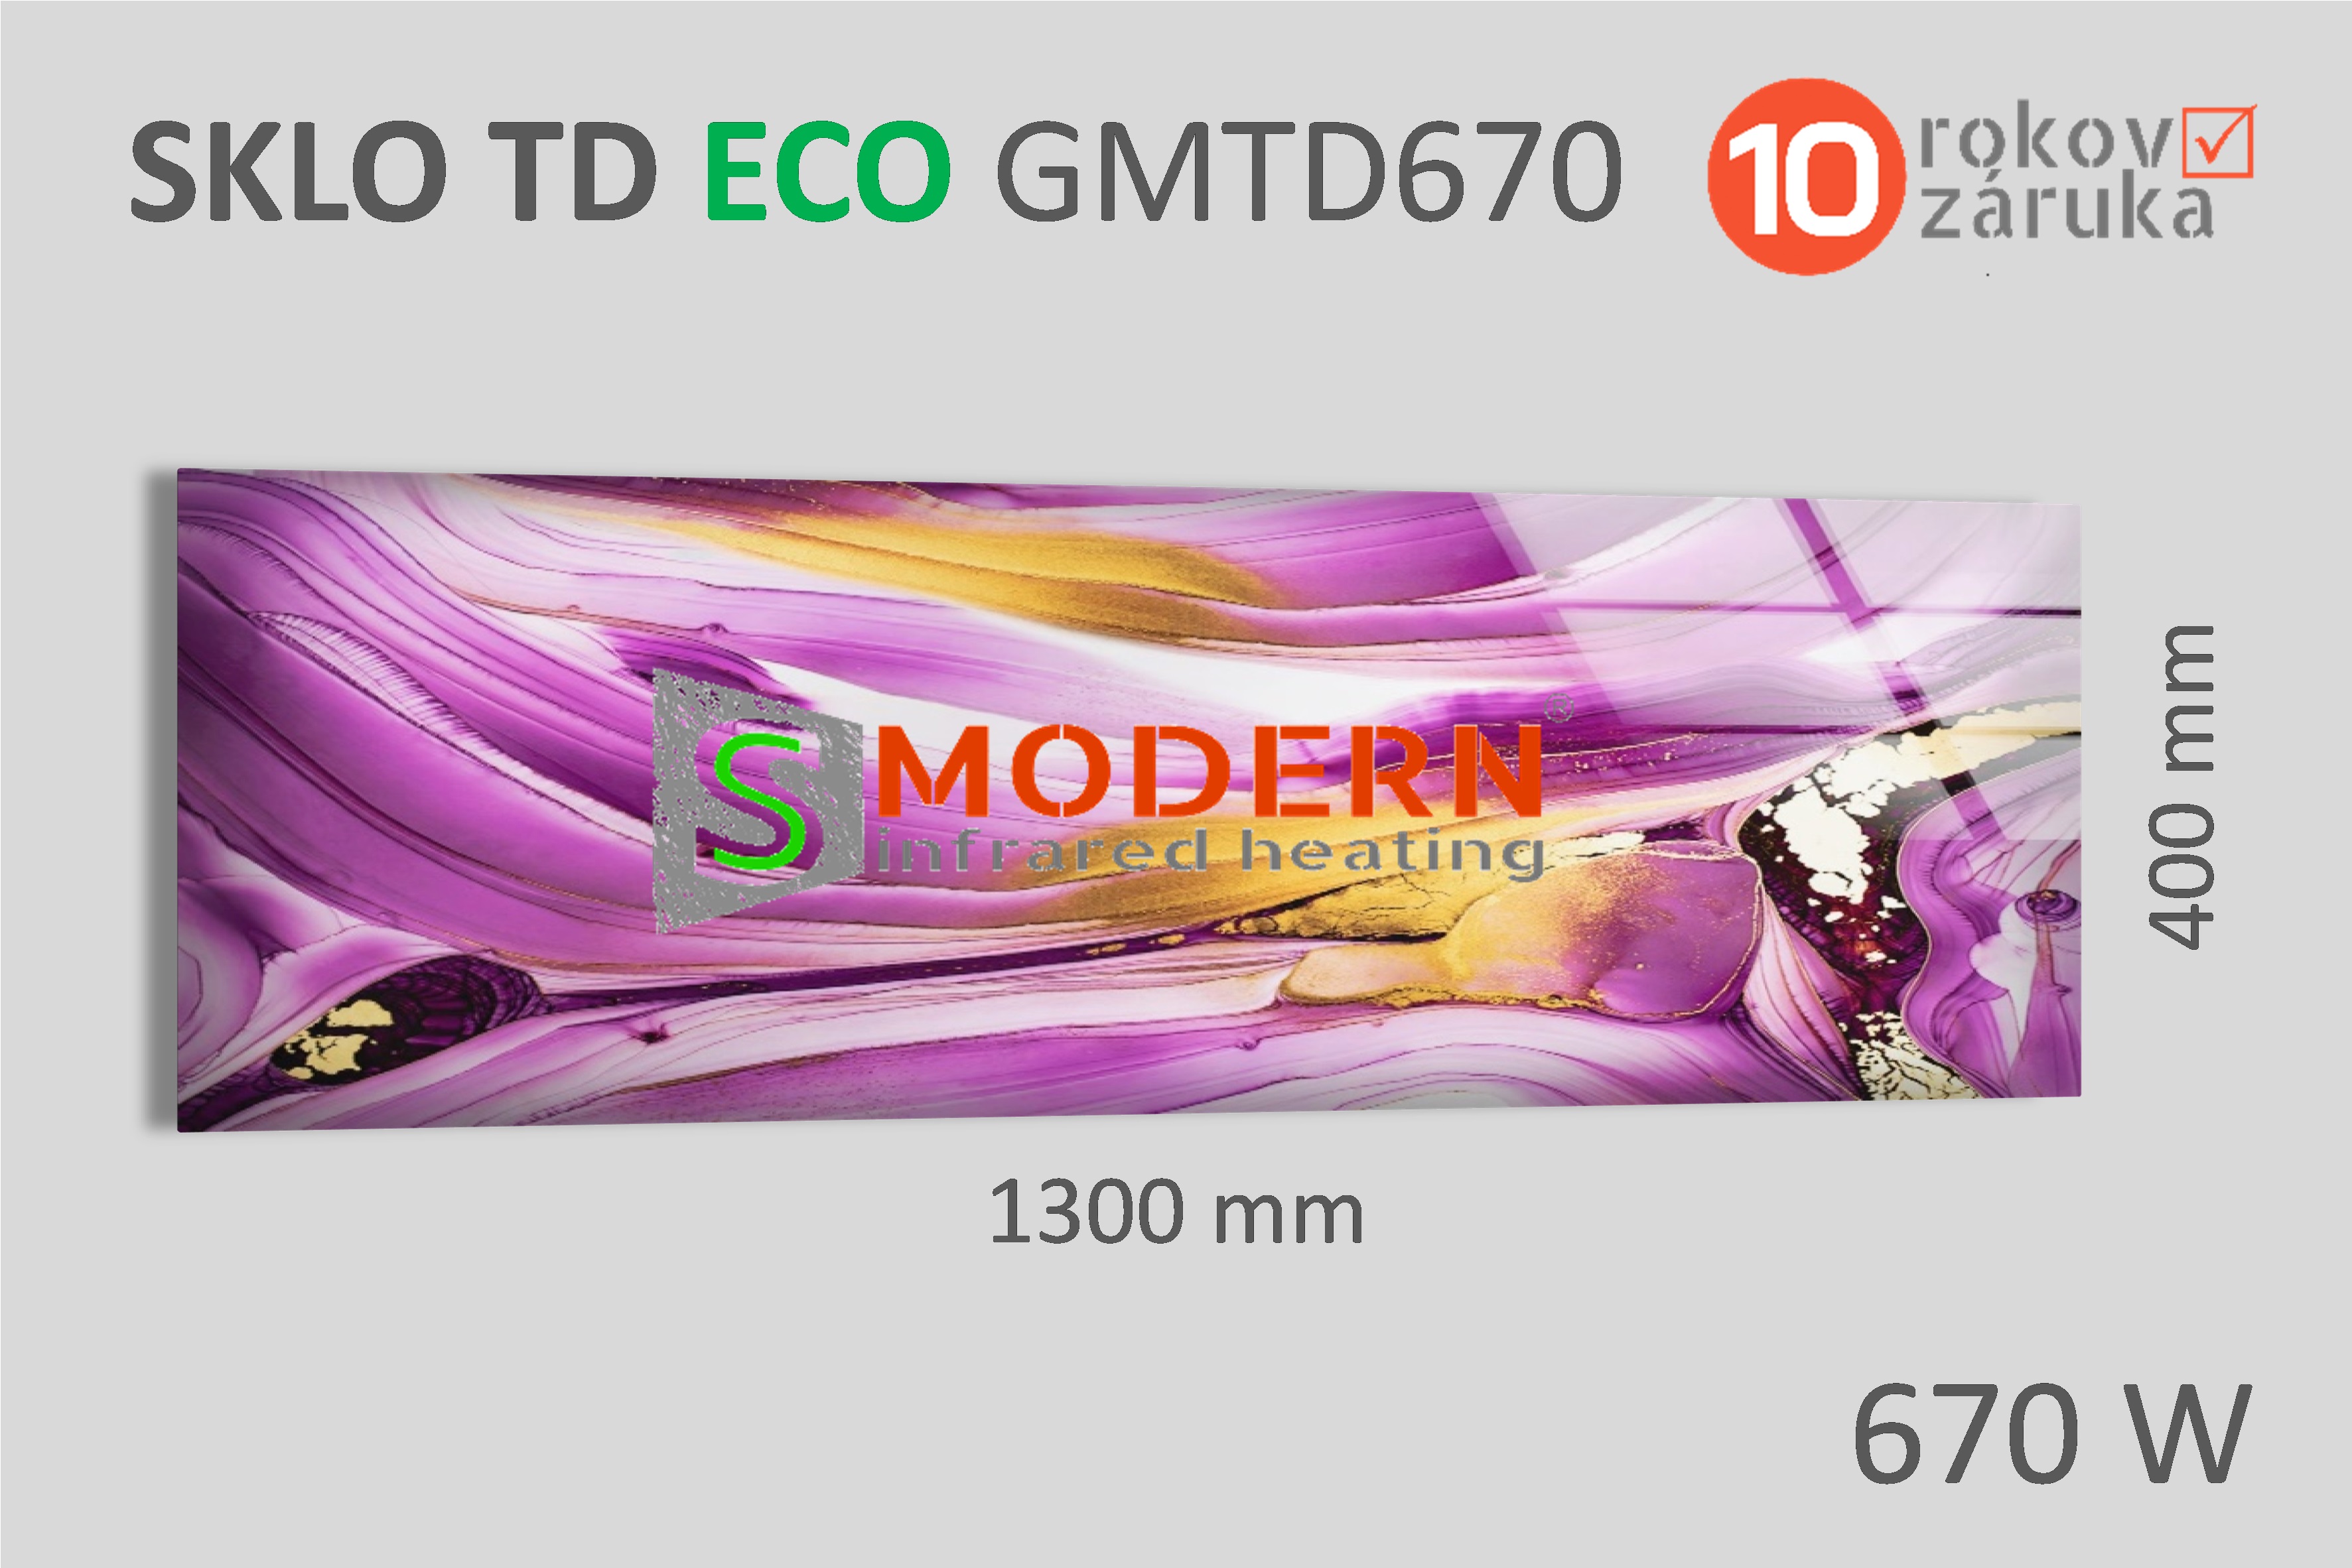 Sklenený infrapanel SMODERN® TD ECO GWTD670 / 670 W, obrazový